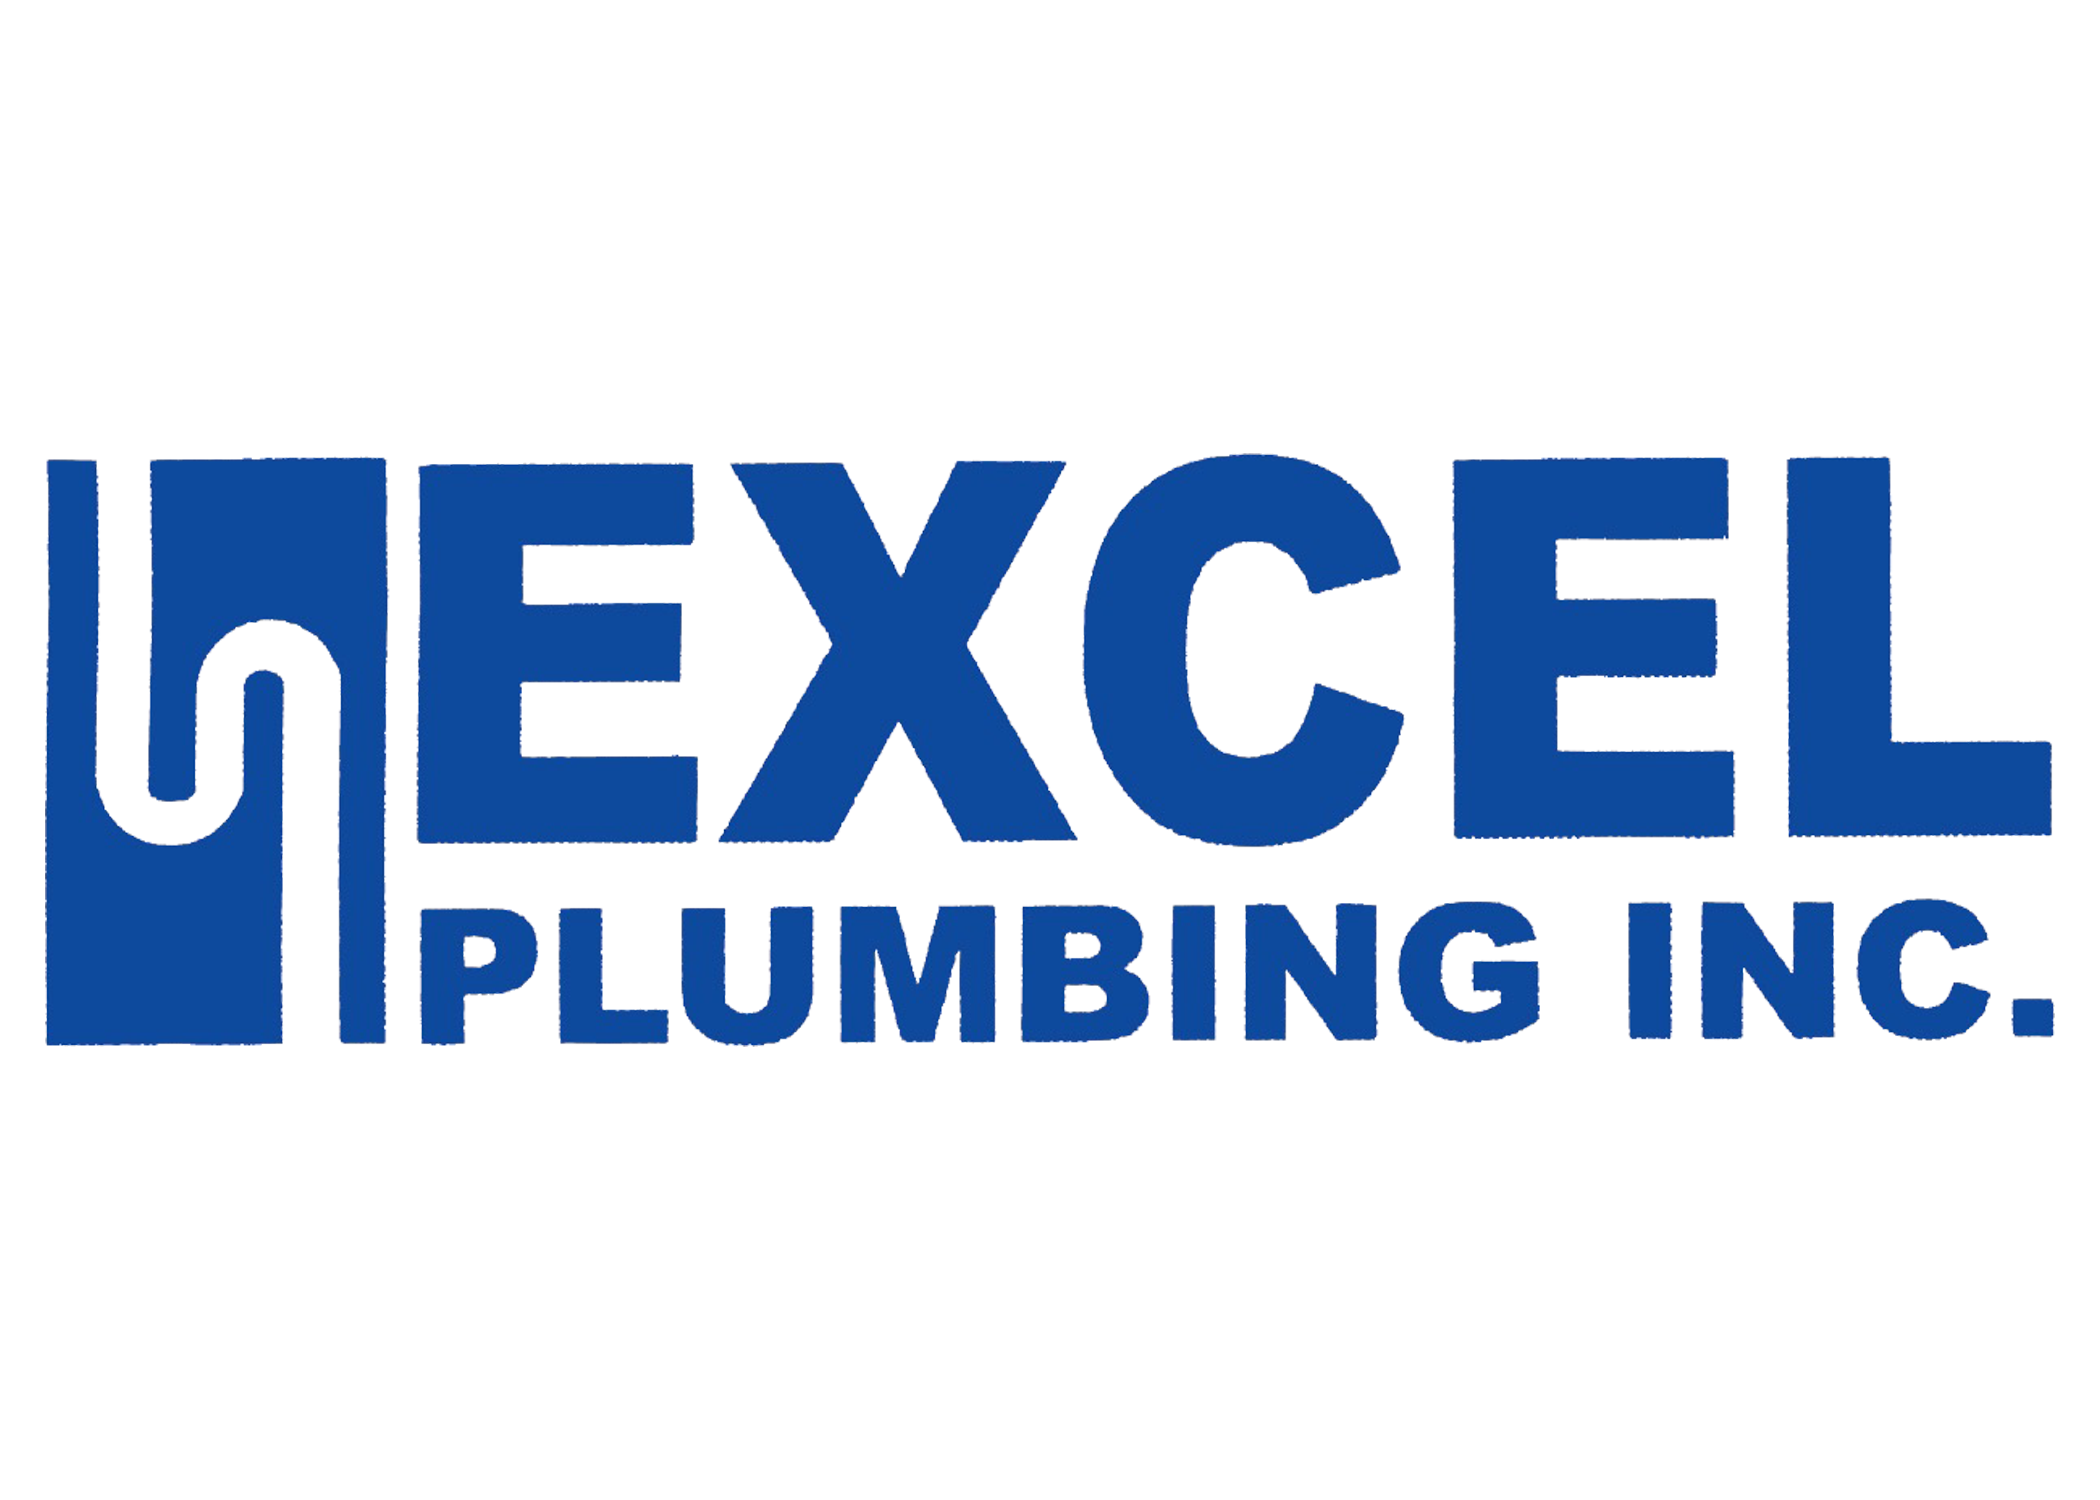 Excel Plumbing Inc.